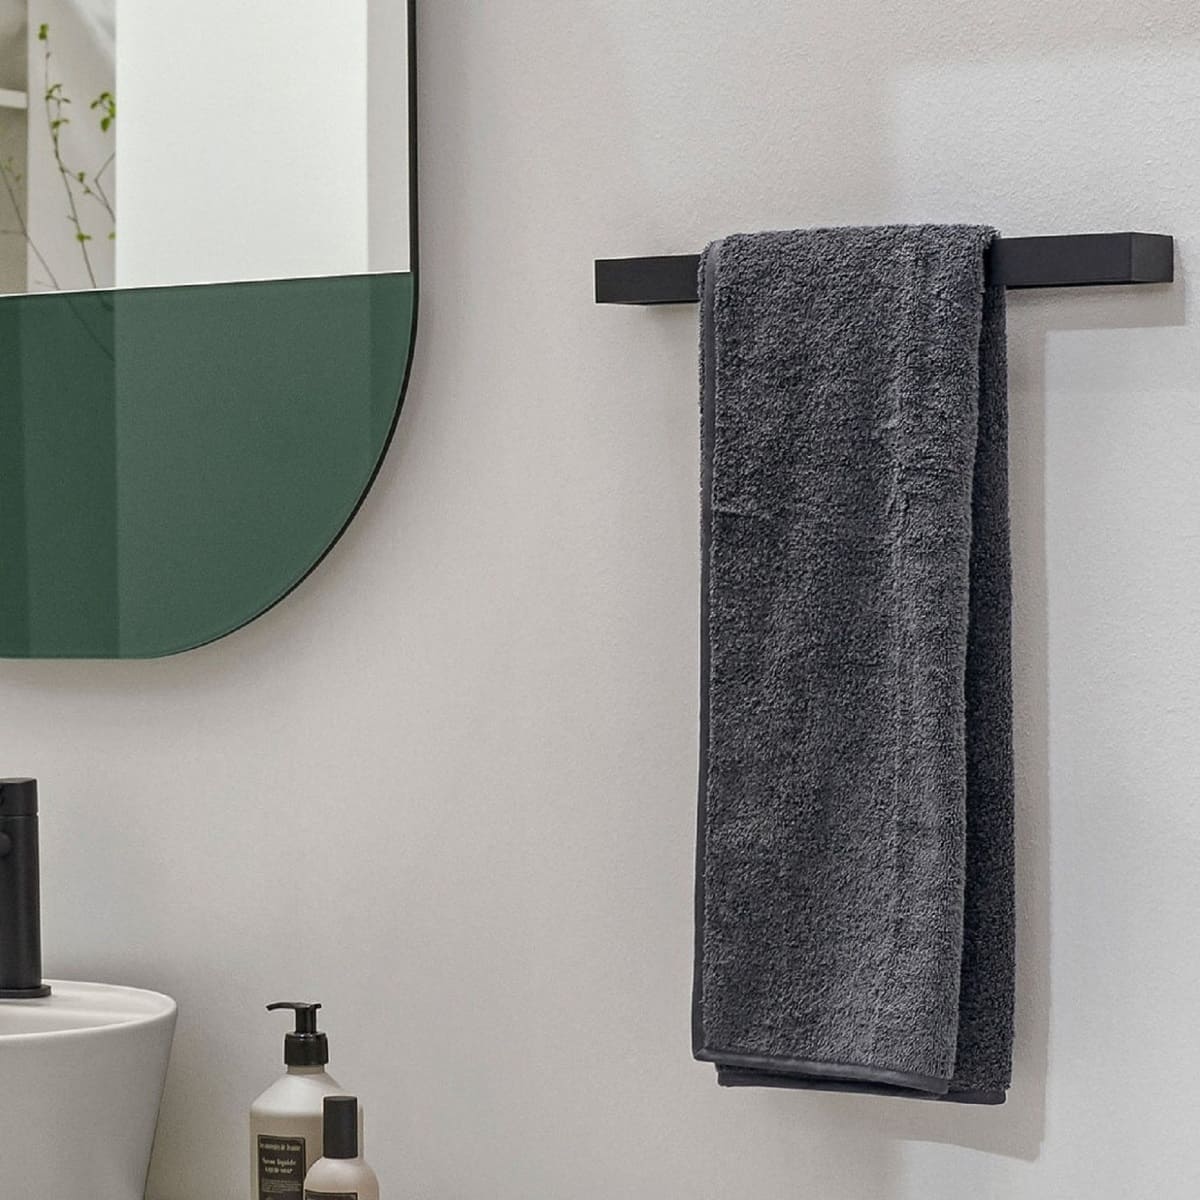 How To Remove Rectangular Towel Bar